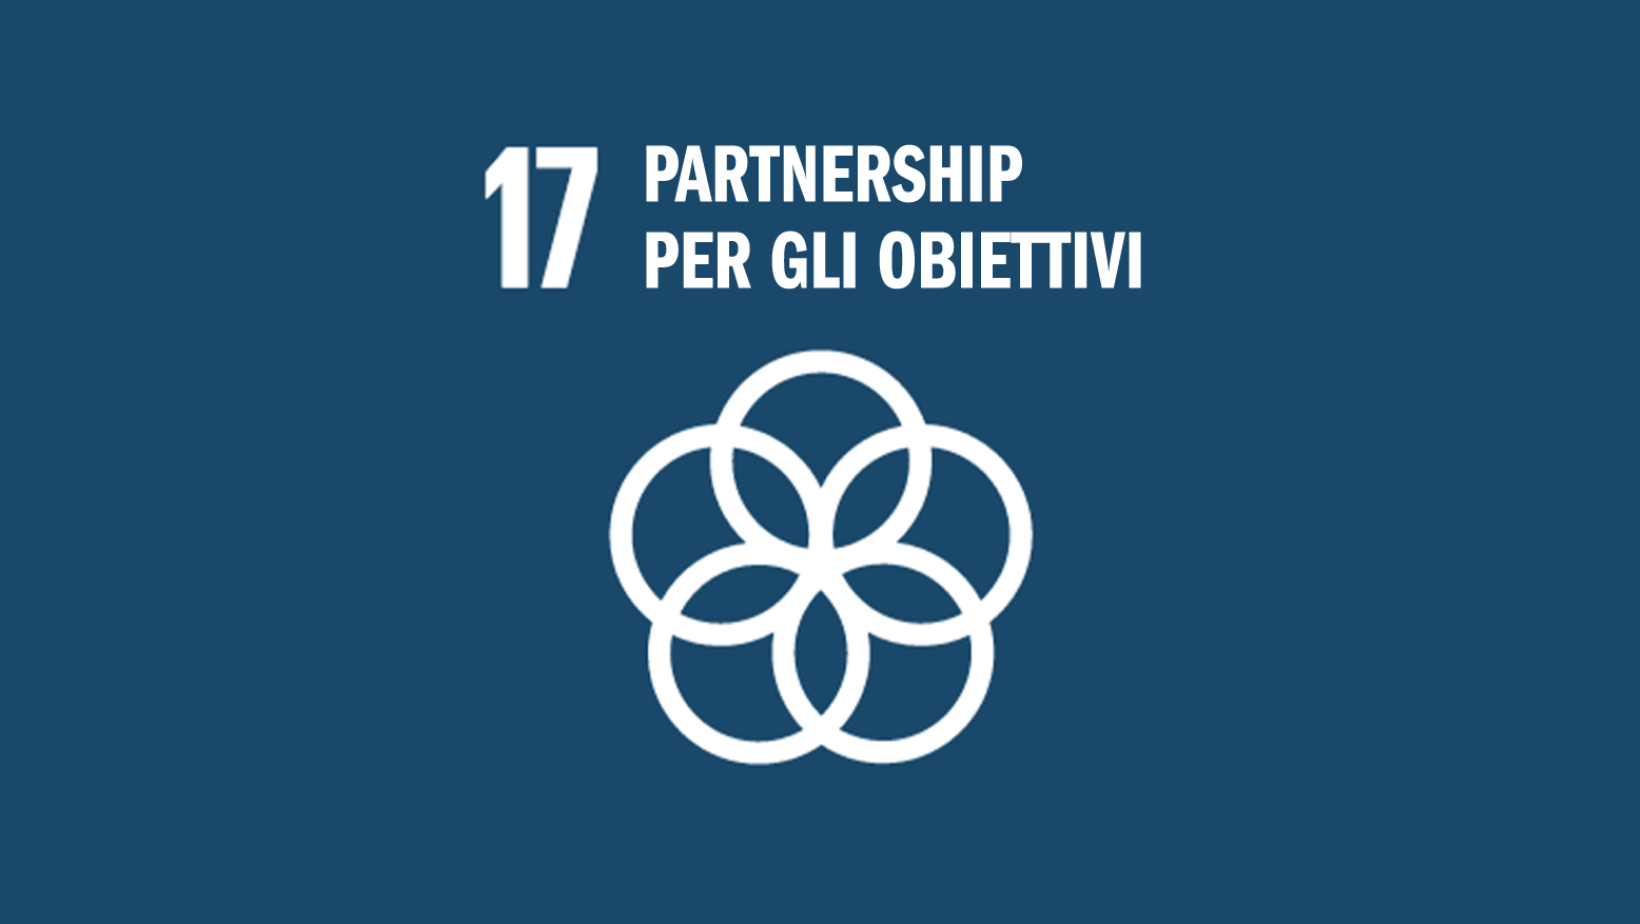 Obiettivo 17: Partnership per gli obiettivi